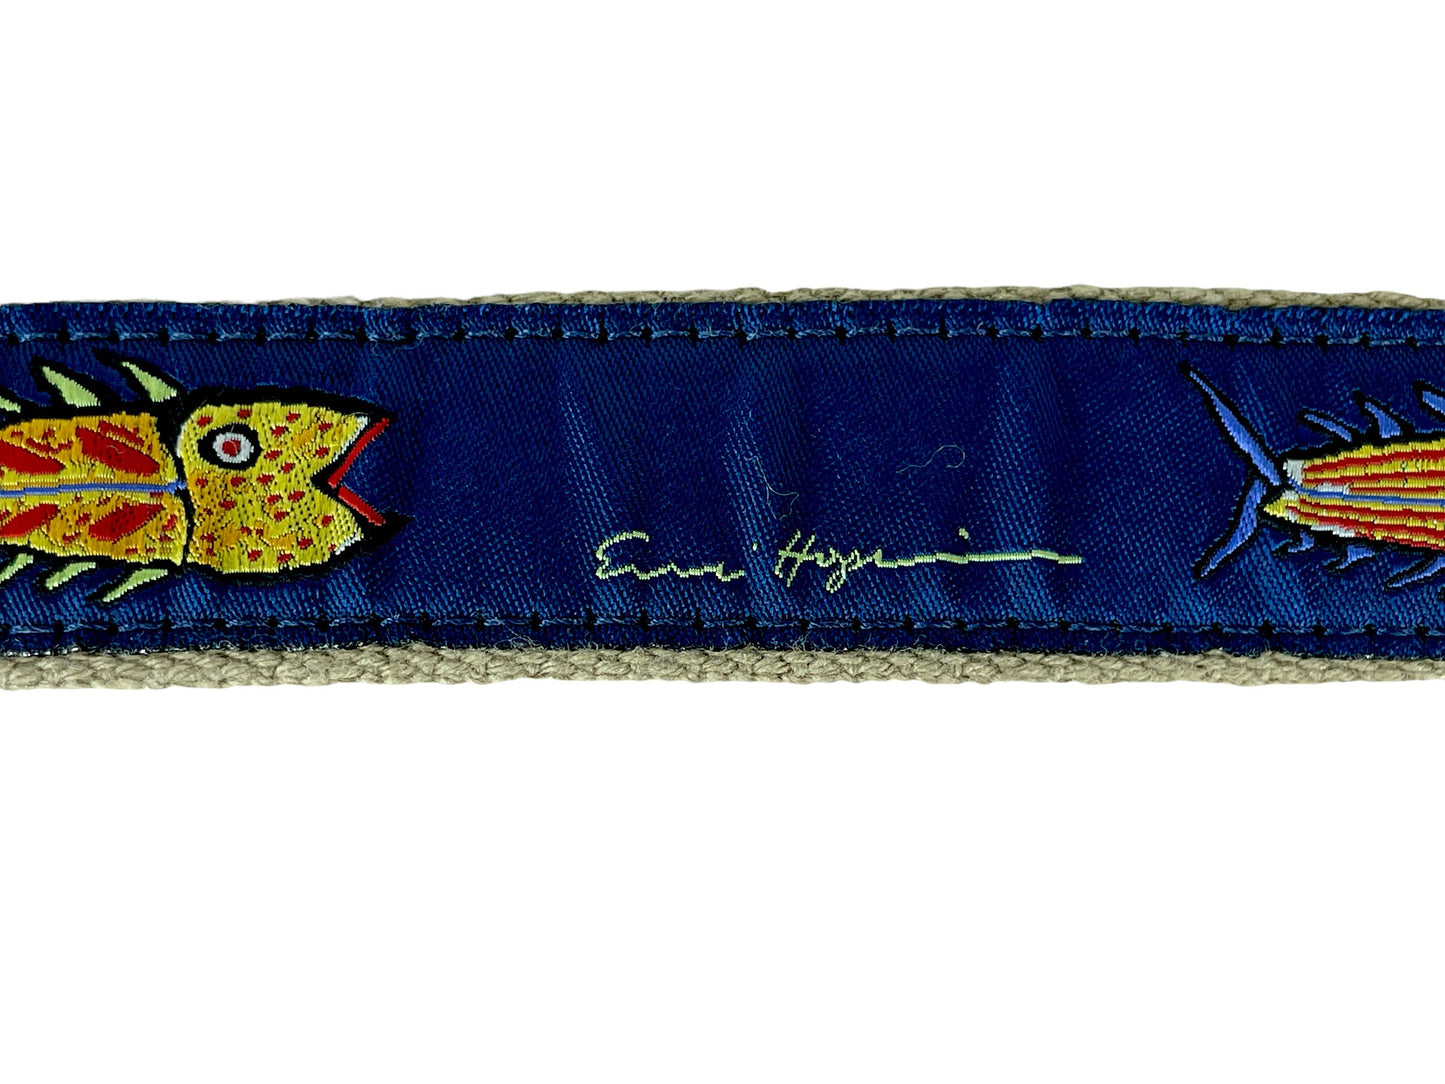 Vintage fish ribbon belt adjustable colorful preppy